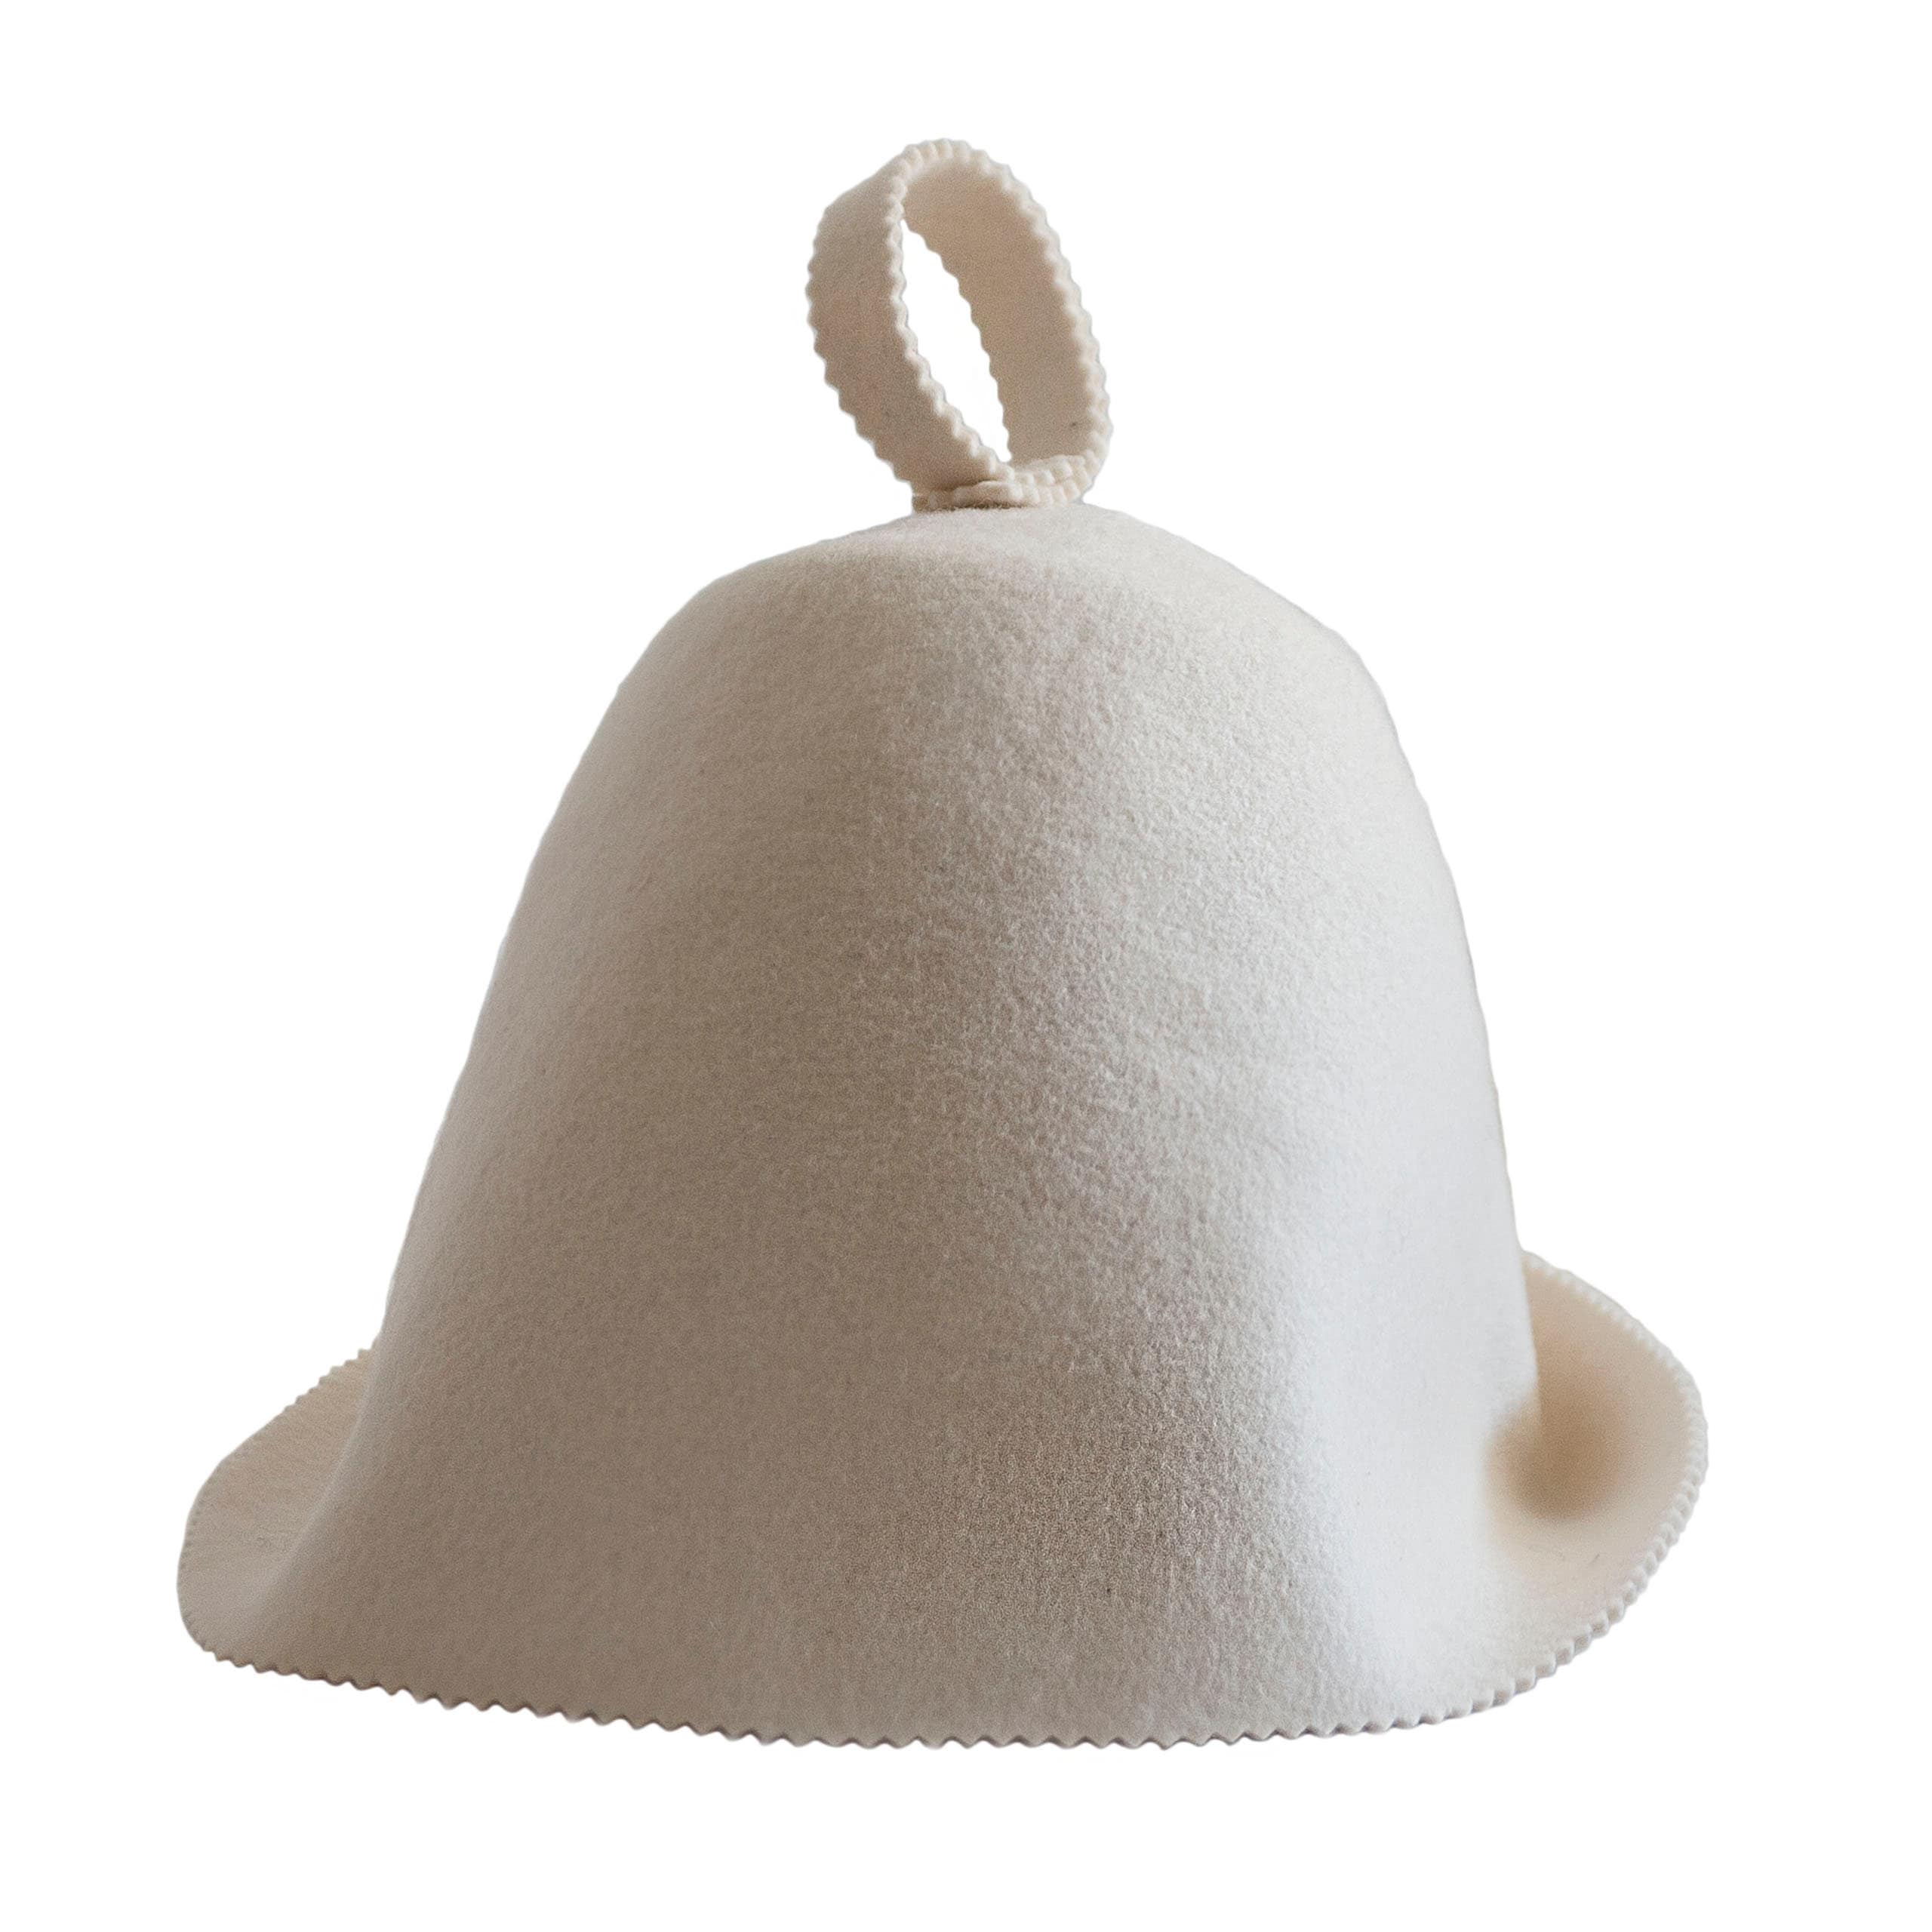 Natural Textile Chapeau de Sauna Sauna Kitten Blanc 100% chapeaux en feutre de laine biologique Guide ebook incluse pour sauna en anglais Protégez votre tête de la chaleur 